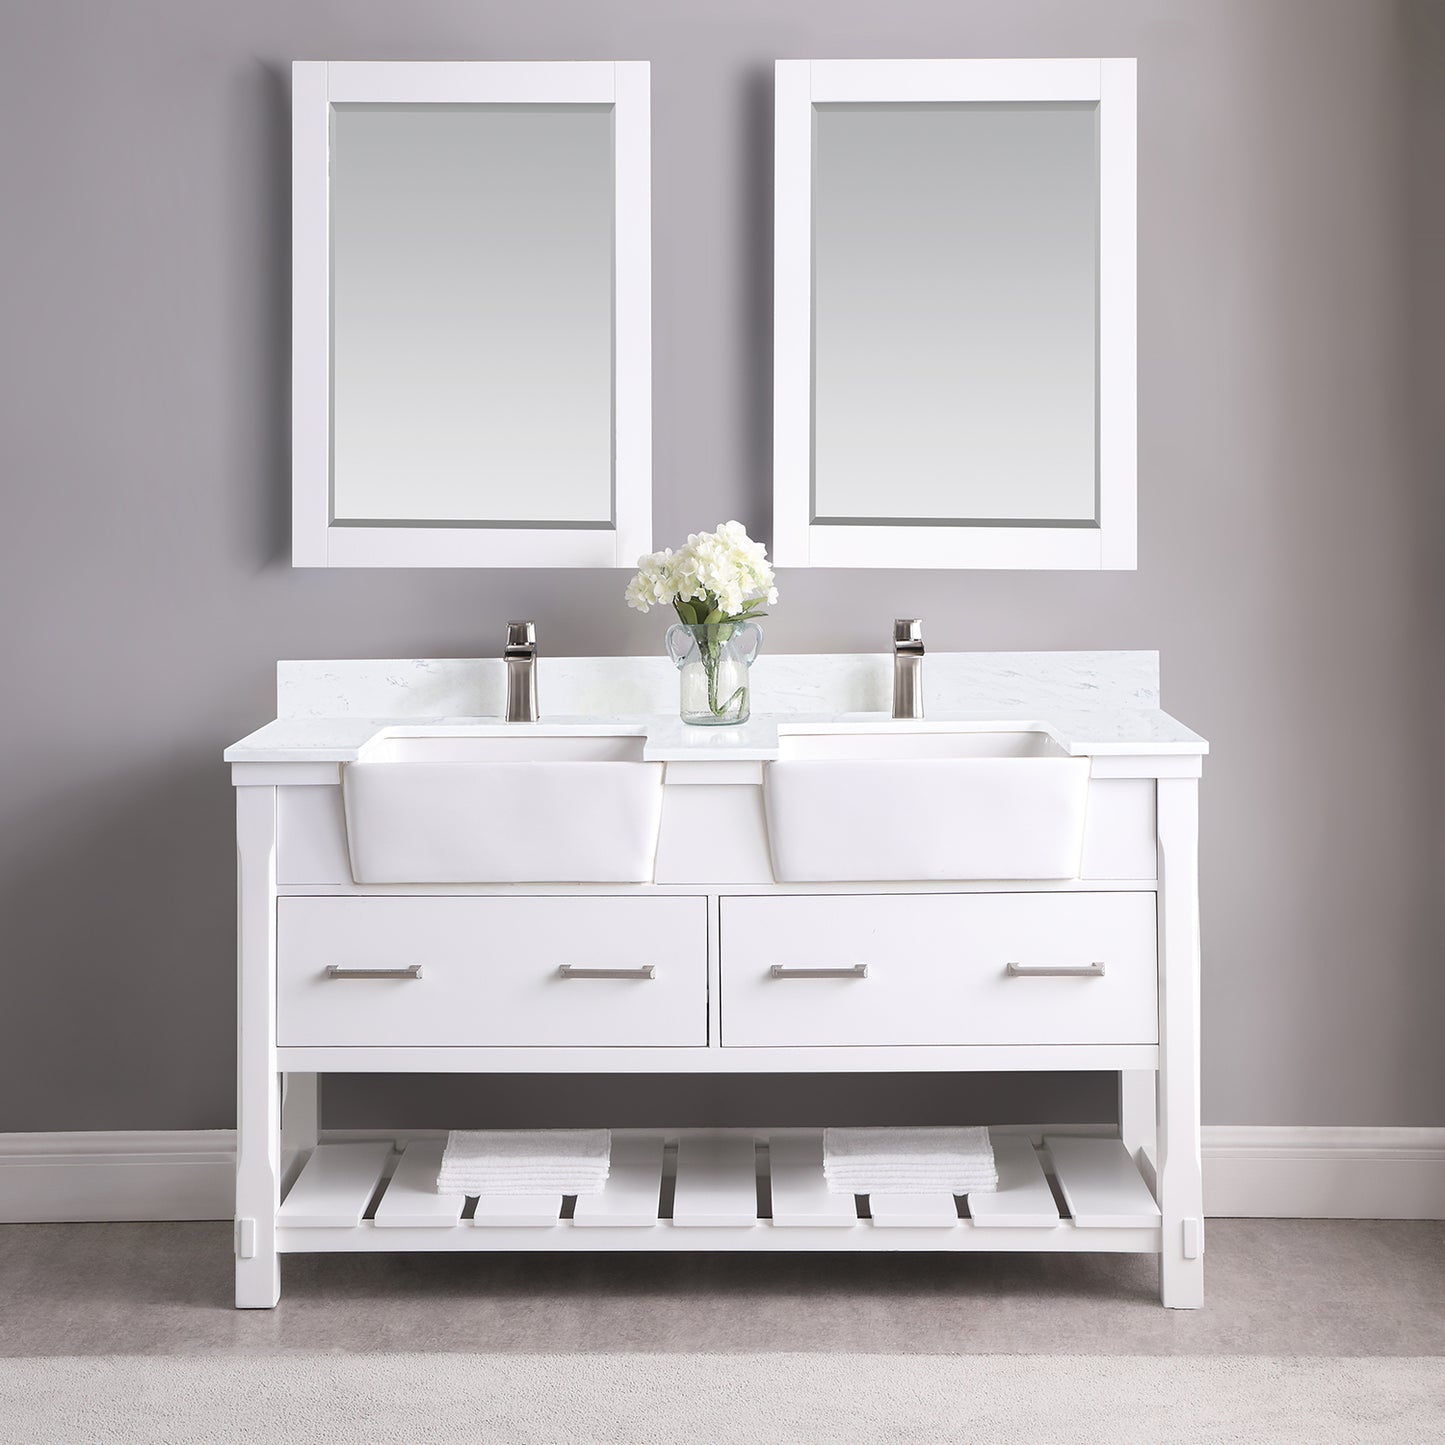 Georgia 60" Double Bathroom Vanity Set with Aosta White Composite Stone Top with White Farmhouse Basin- Altair Designs